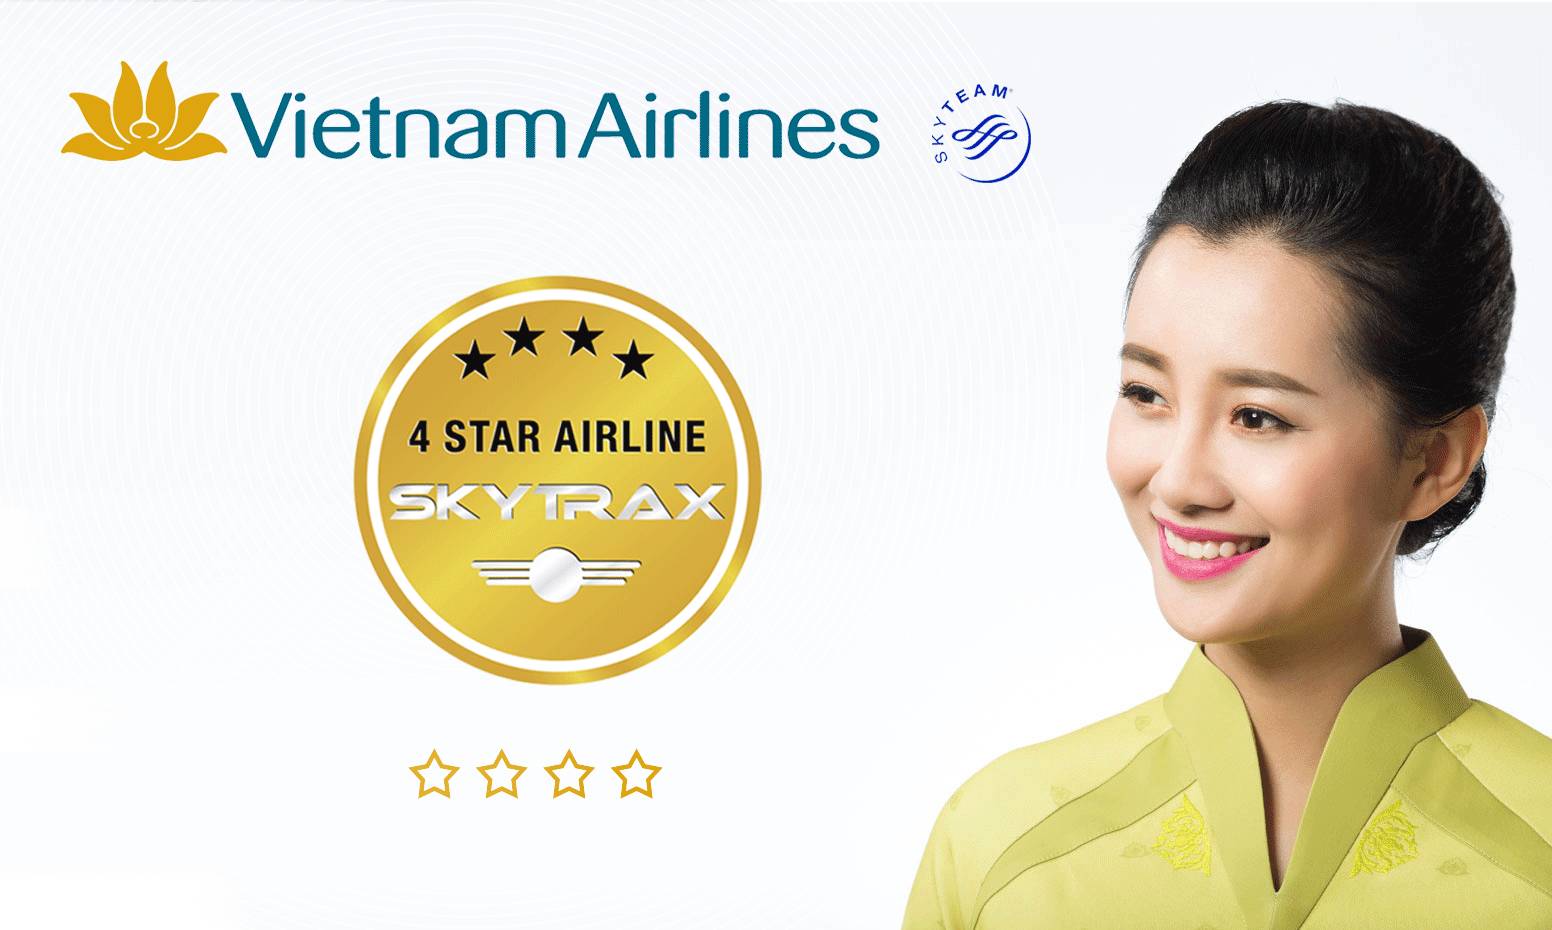 越南航空宝蓝色的机身特别明显,一眼就能识别,空乘人员的服装是越南